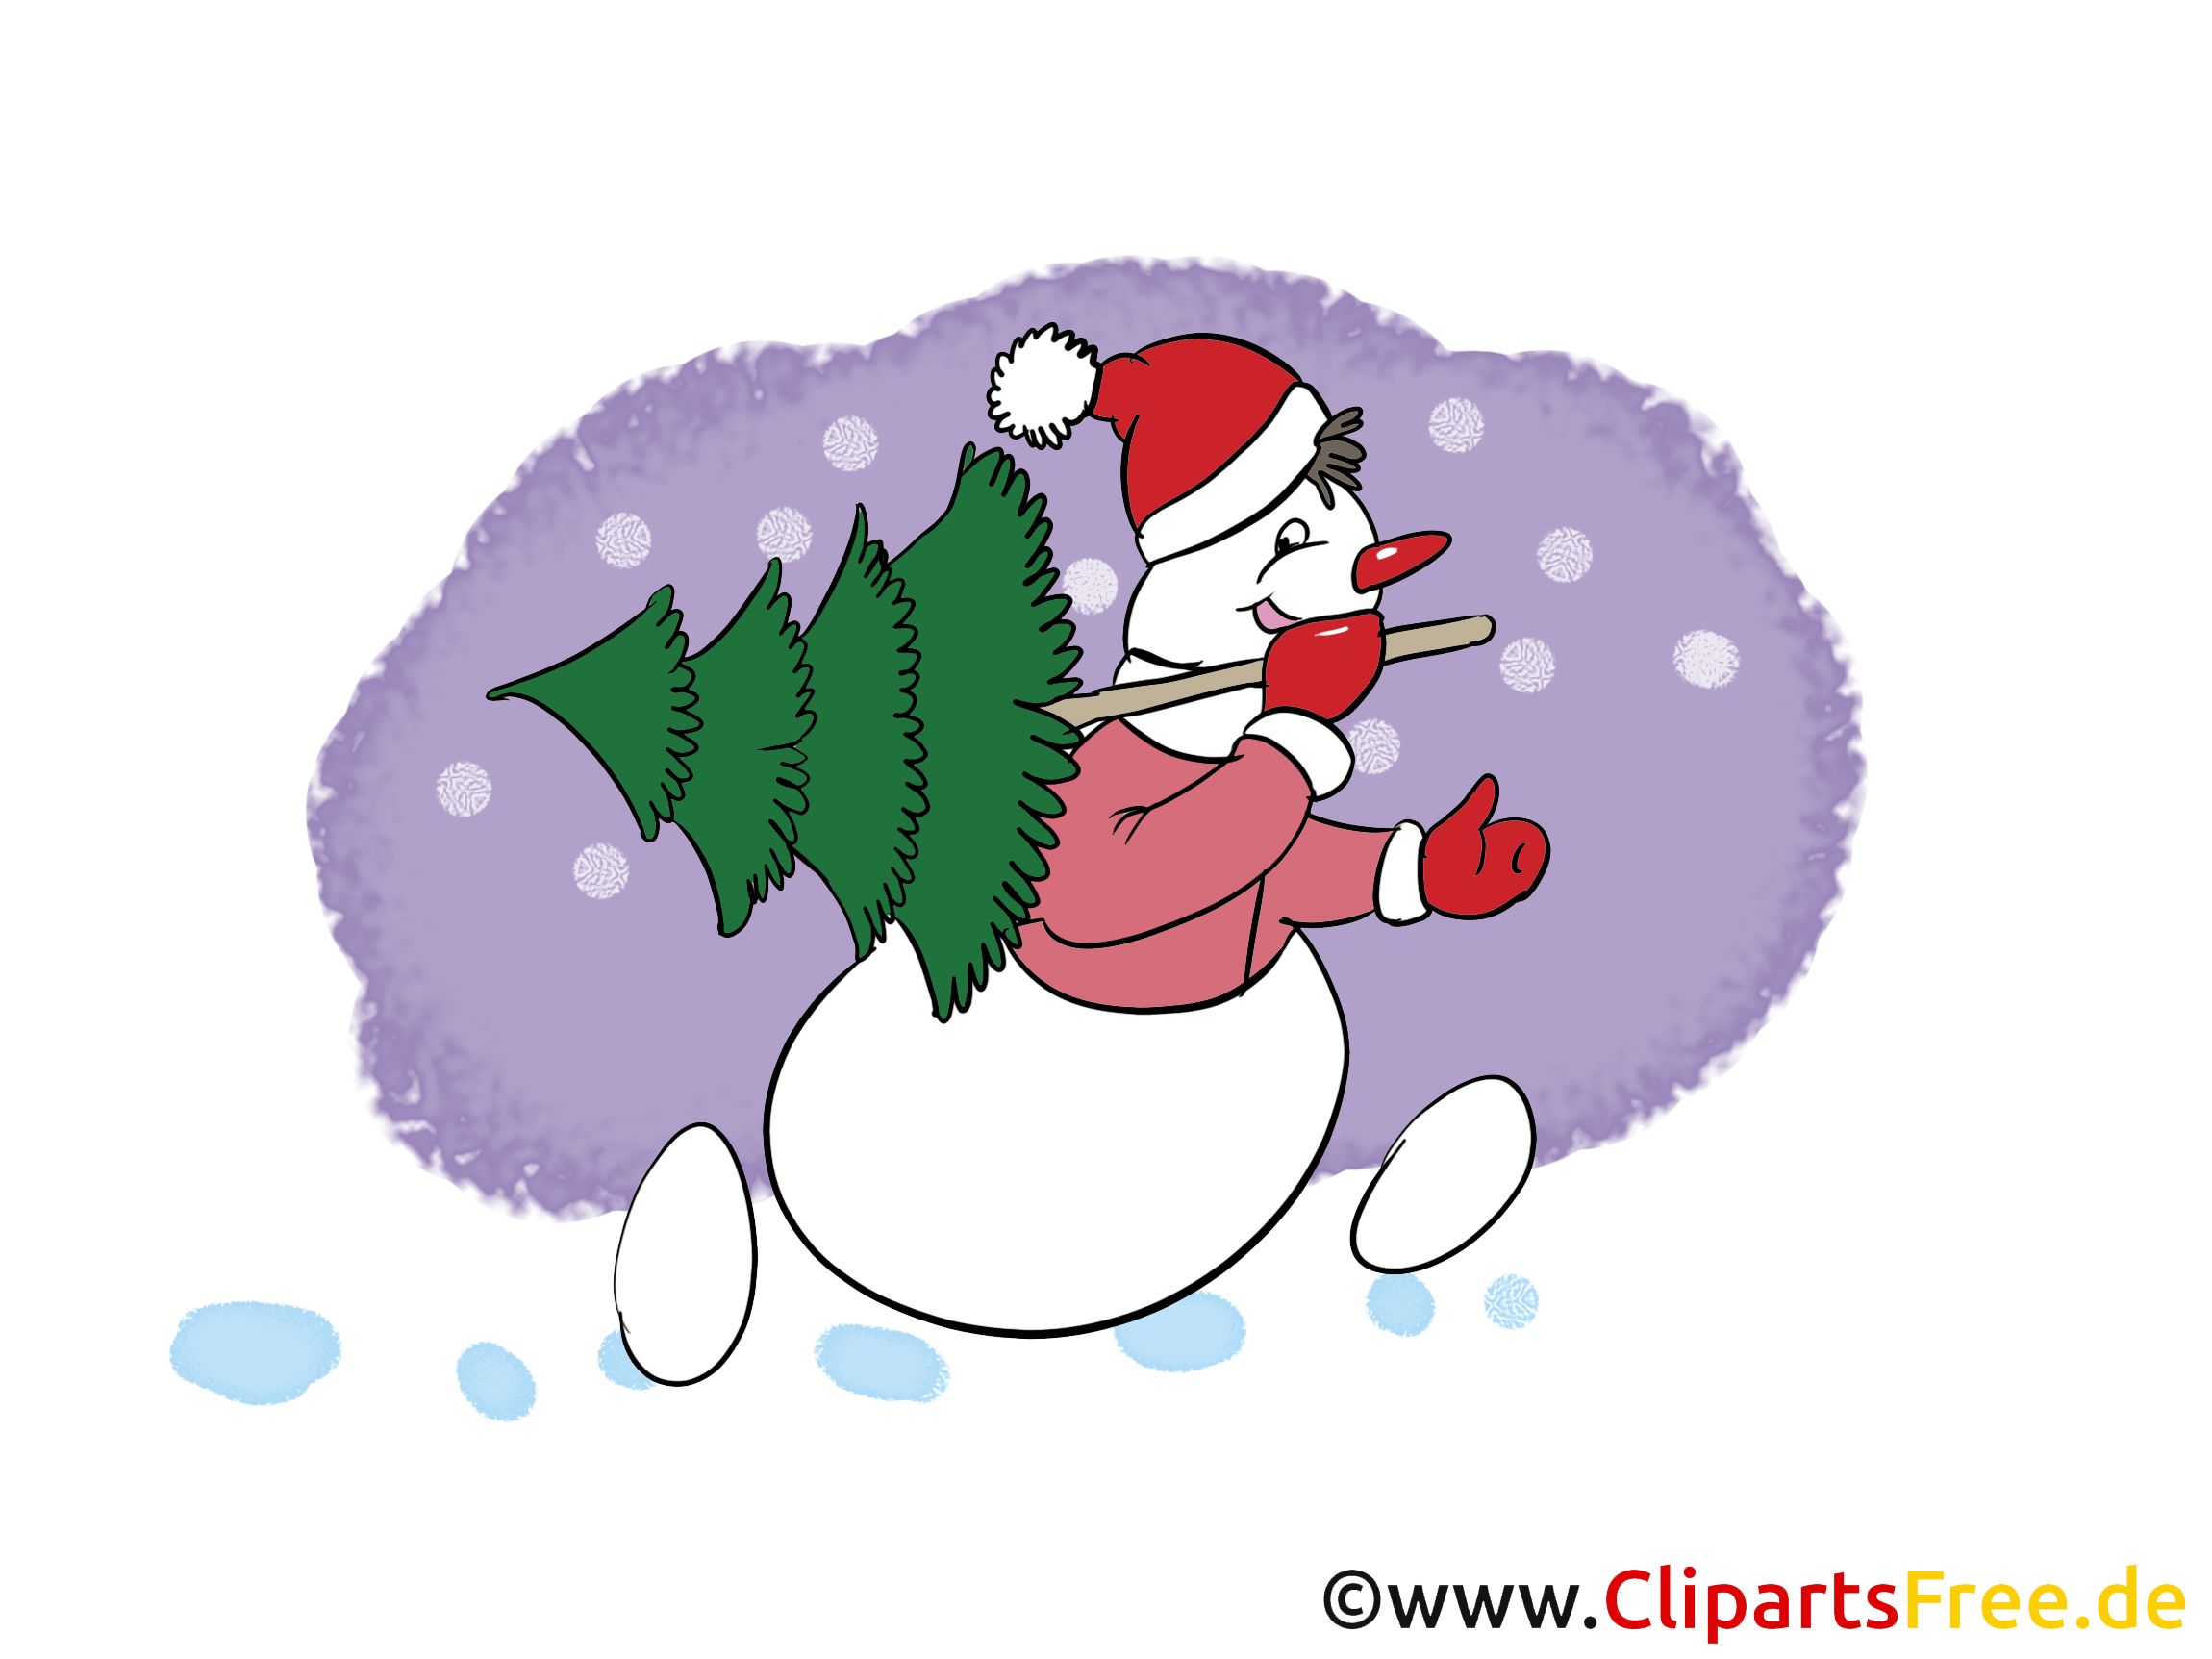 Bonhomme de neige image gratuite – Hiver clipart